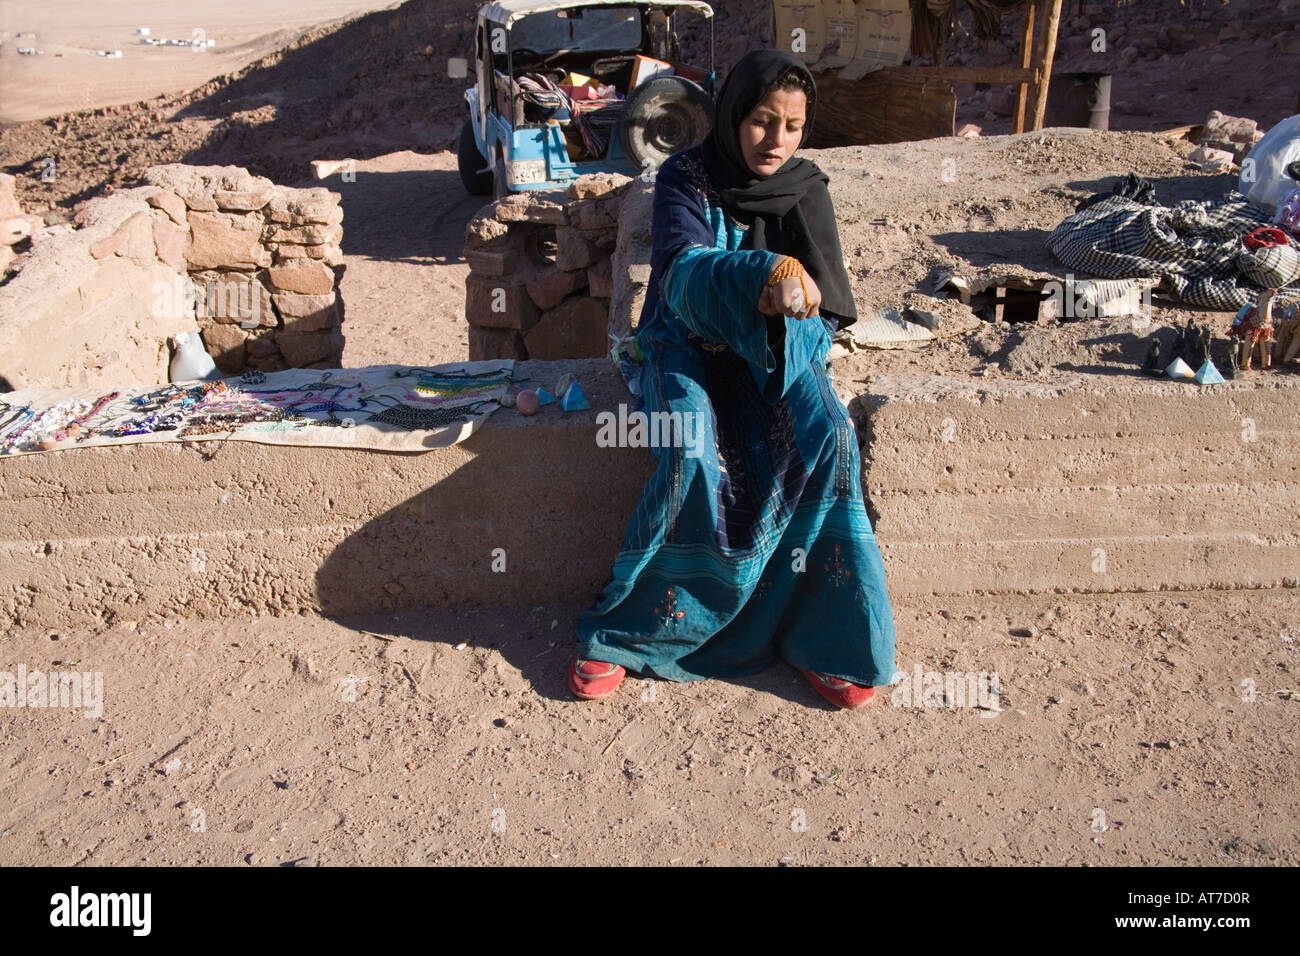 Désert du Sinaï Egypte Afrique du Nord Février une jeune fille bédouine la modélisation d'un bracelet dans l'espoir d'une vente à un touriste de passage Banque D'Images